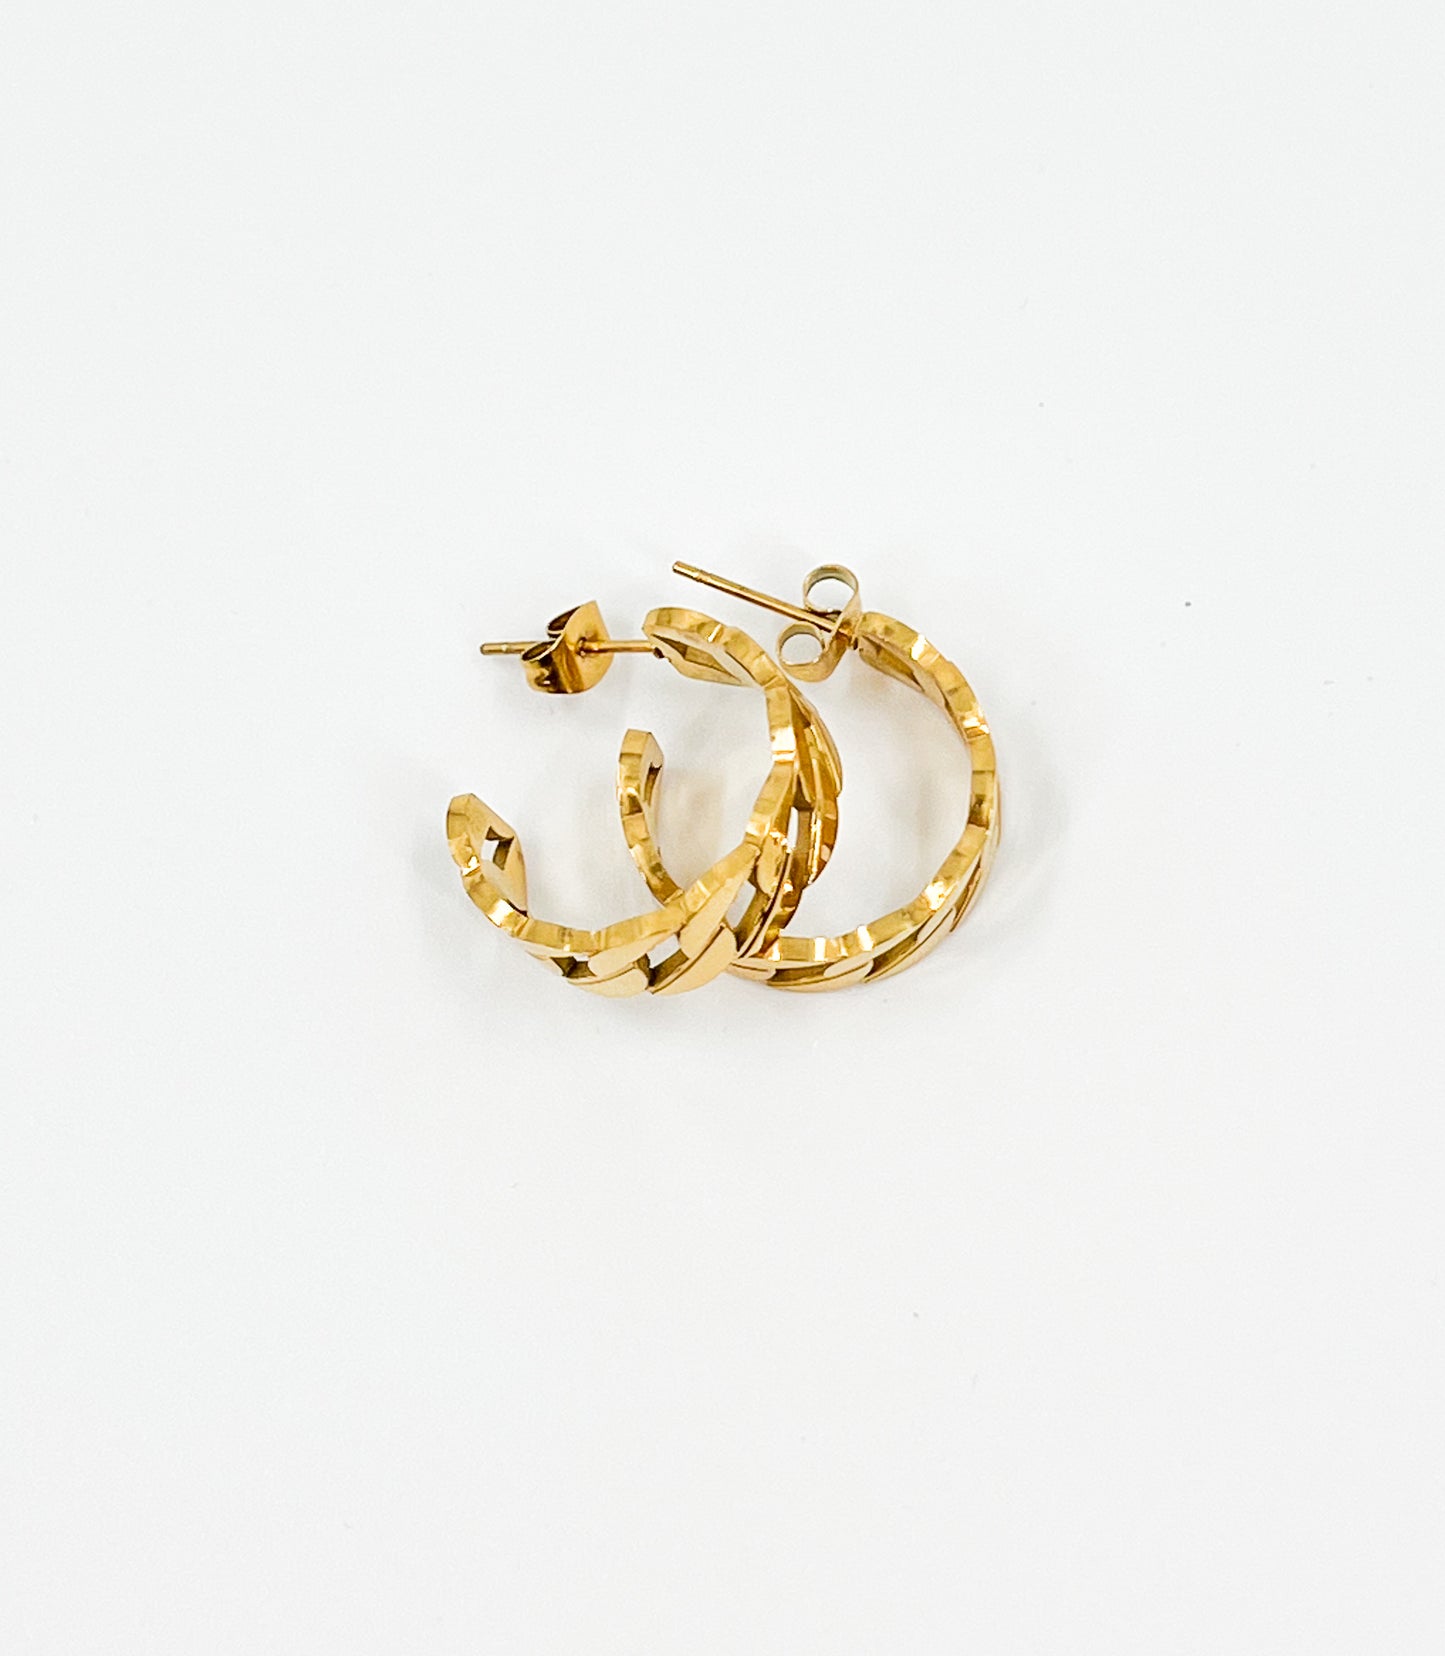 cuban link style earrings in gold